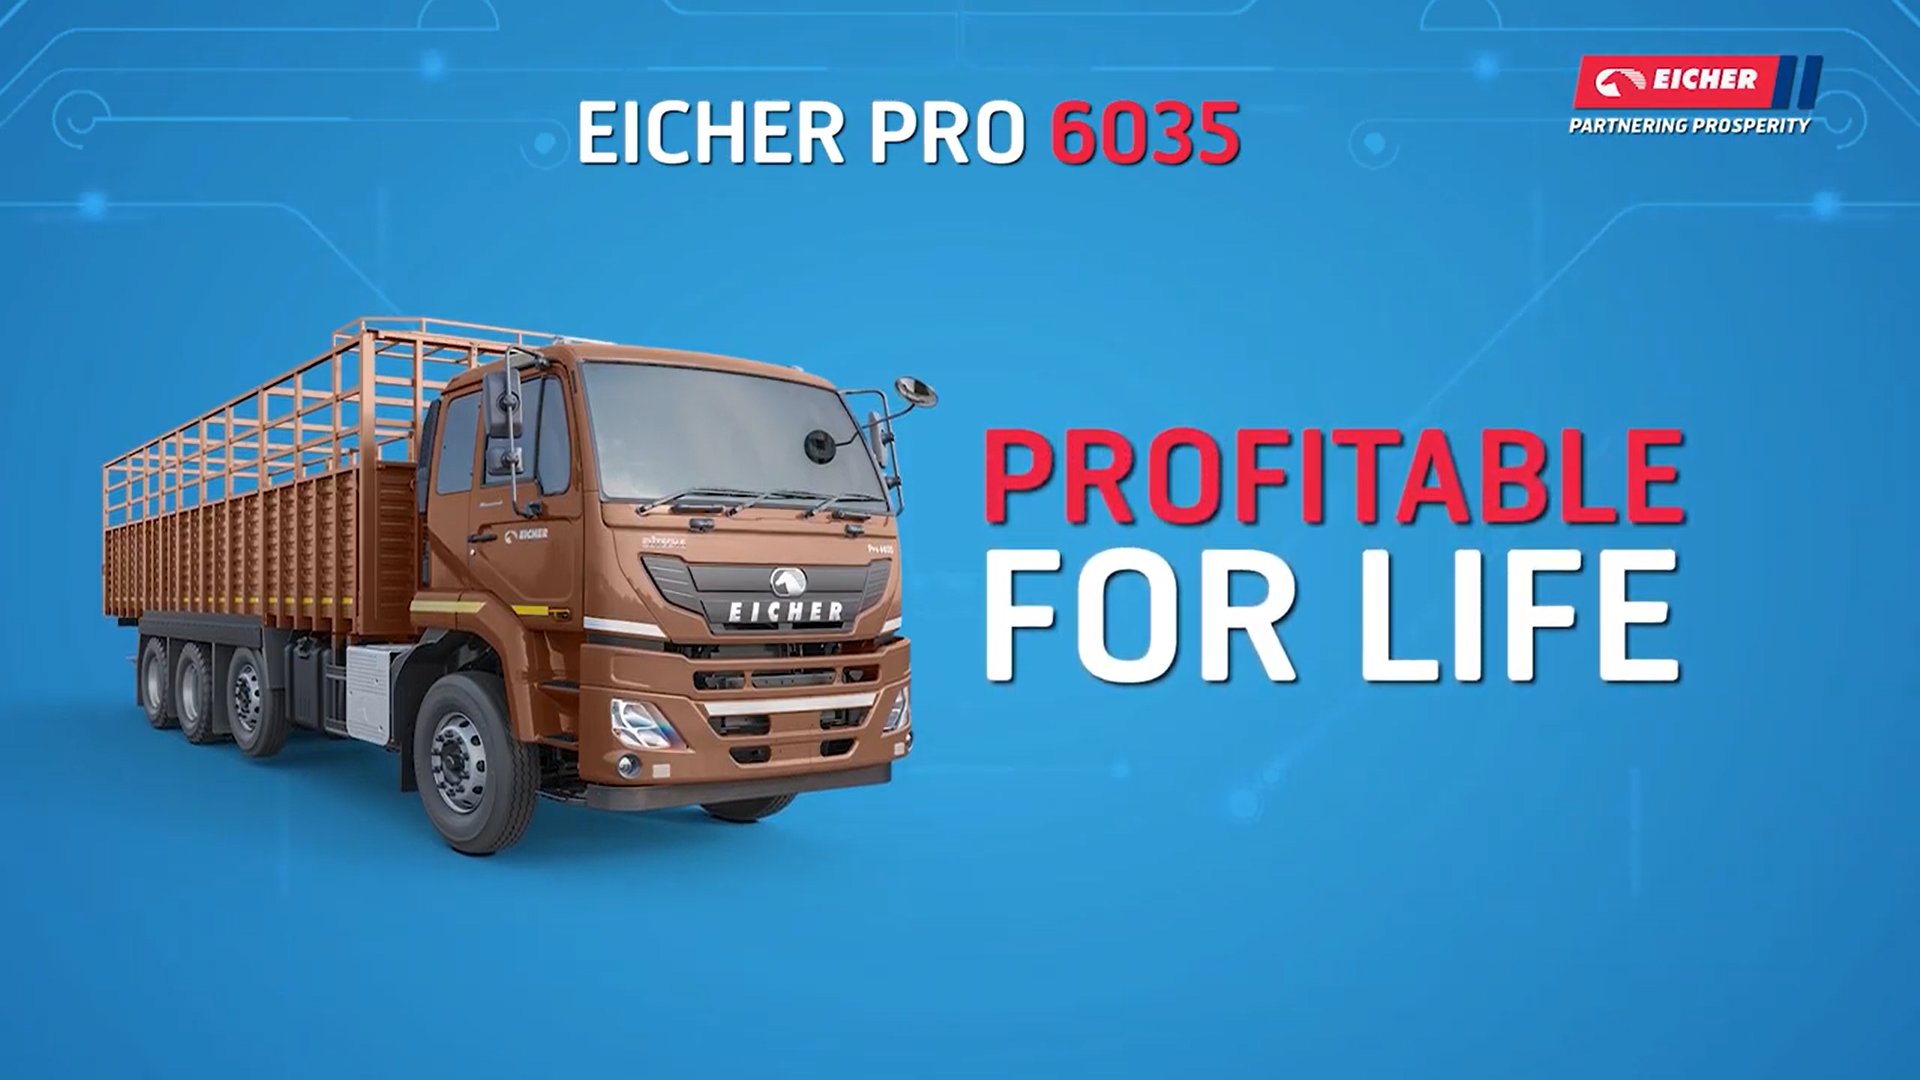 Know your Eicher BSVI Vehicle - Eicher Pro 6035 (Hindi)